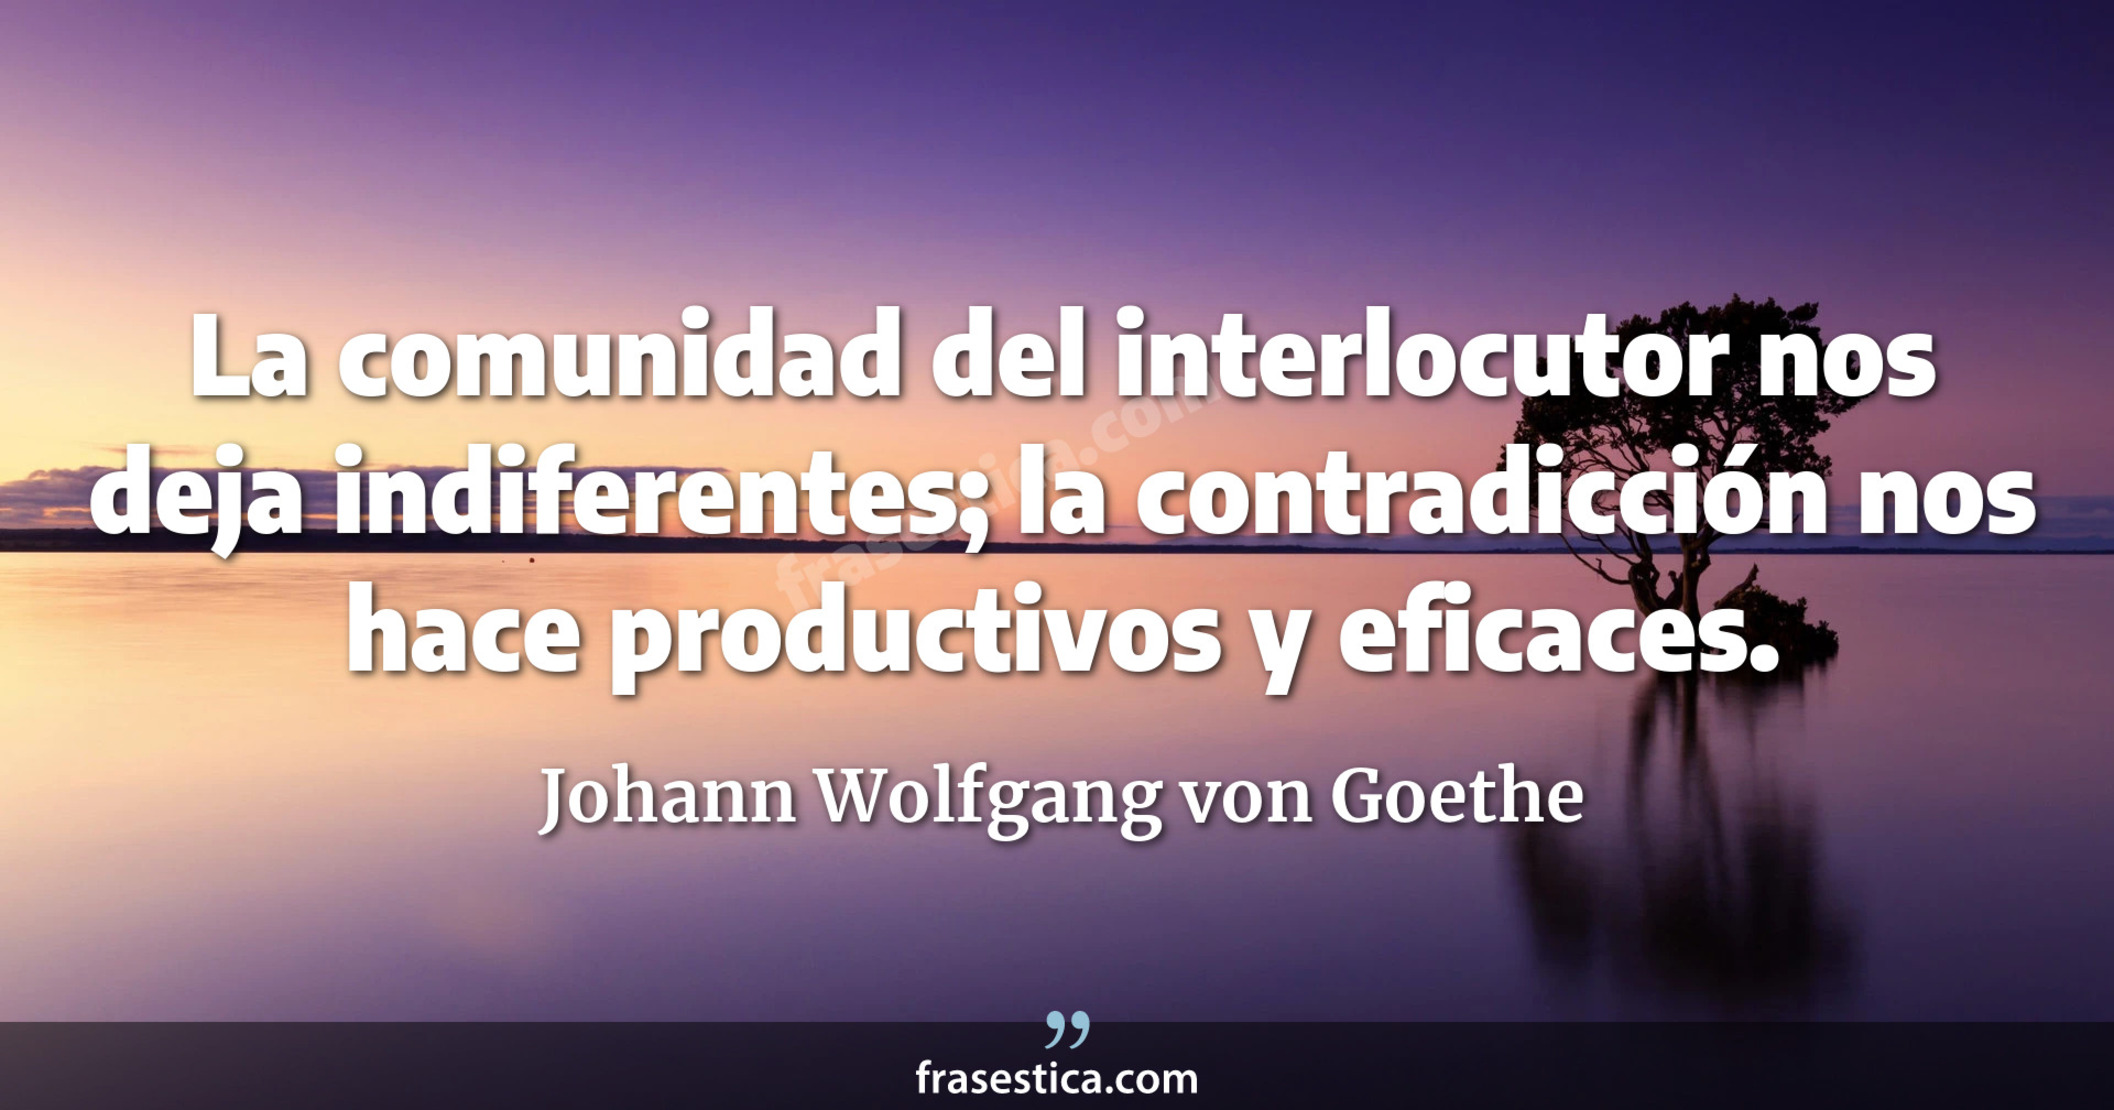 La comunidad del interlocutor nos deja indiferentes; la contradicción nos hace productivos y eficaces. - Johann Wolfgang von Goethe